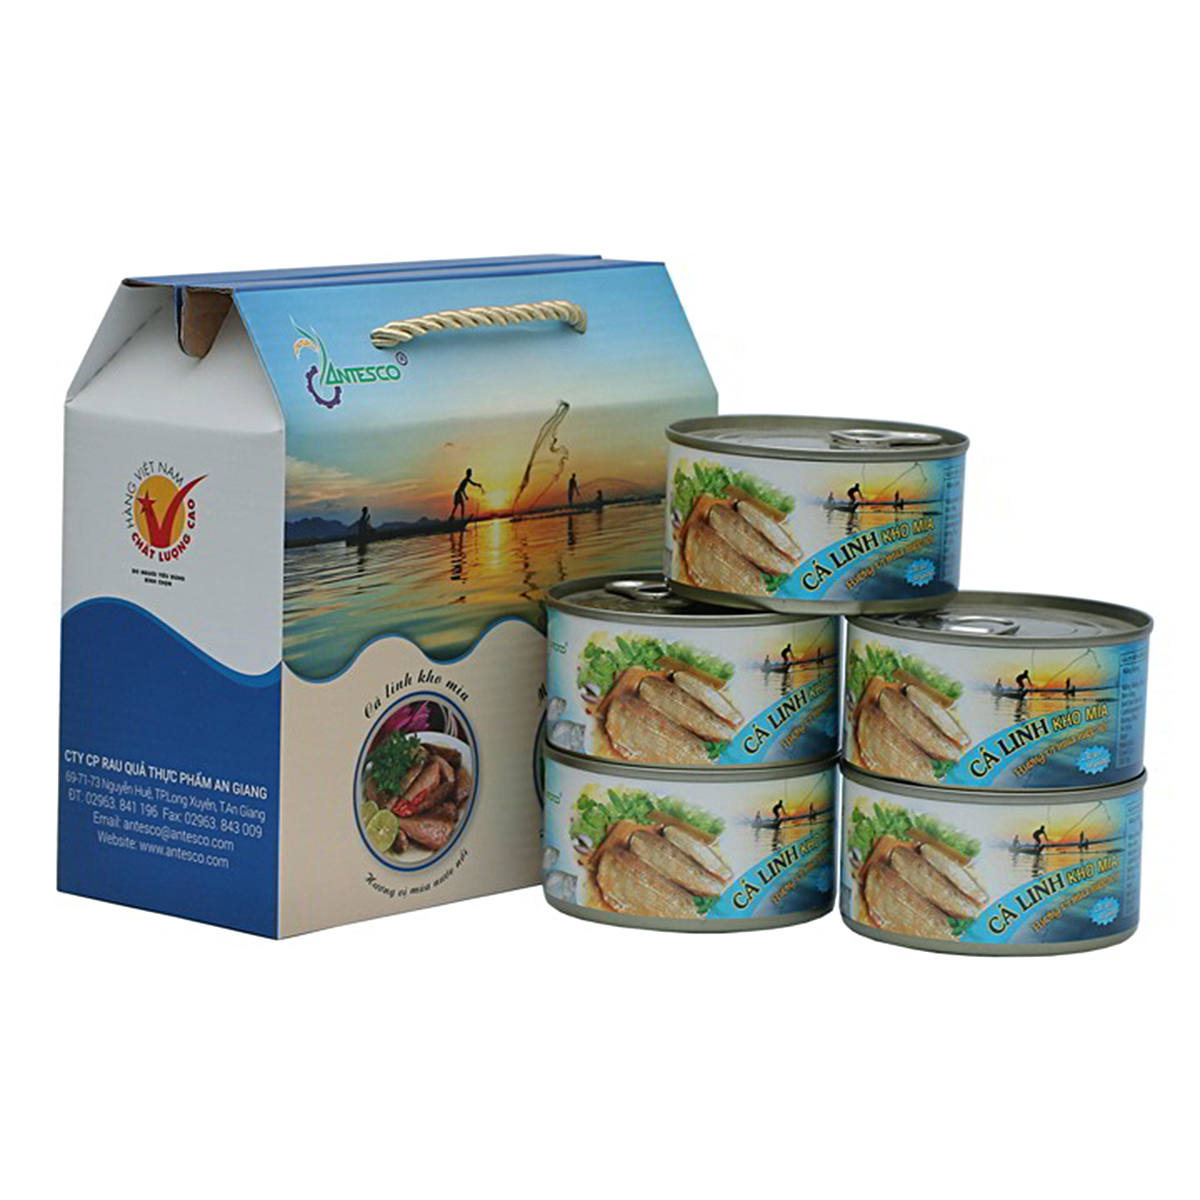 HCMThùng 06 hộp Cá Linh kho mía - Antesco - Thực phẩm đóng hộp đặc sản